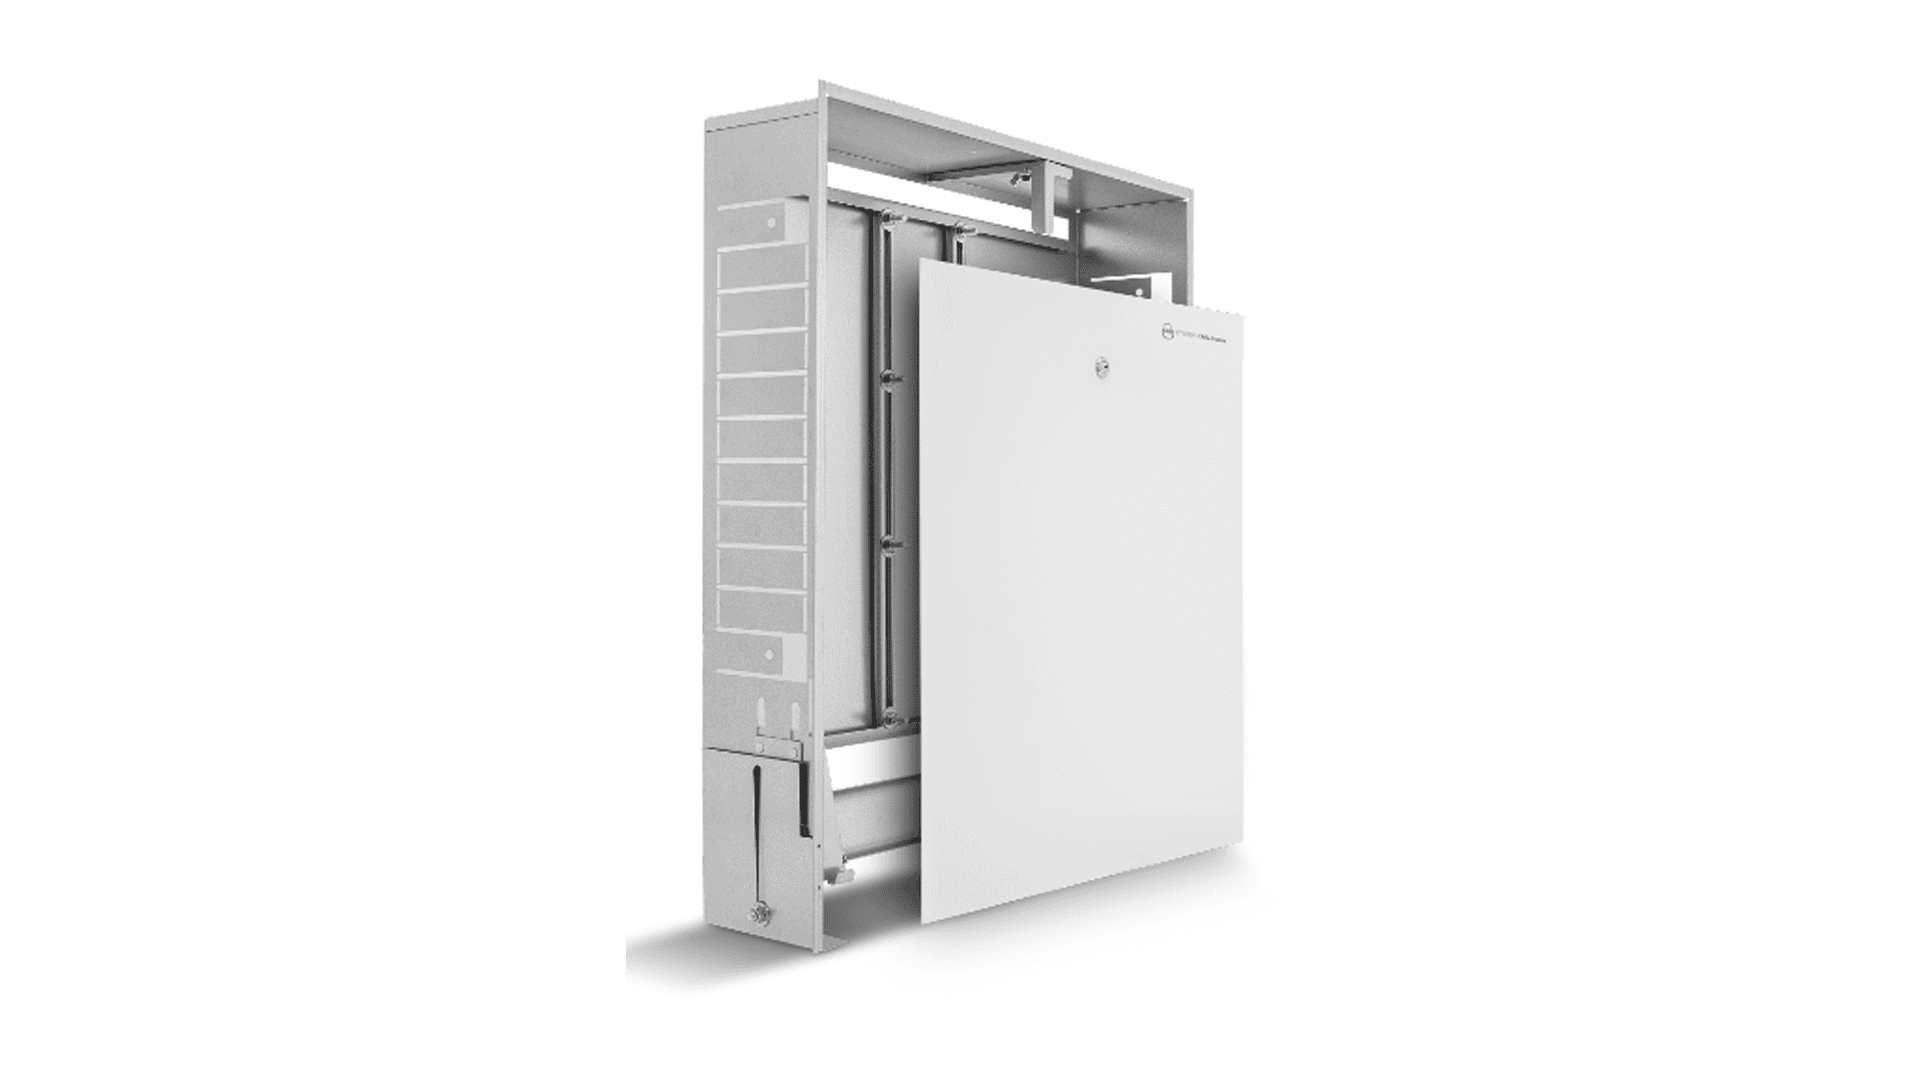 KAN-therm - Instalační skříně Slim a Slim+ - Skřínka pro instalaci do stěny pro instalaci radiátorového topení, chlazení nebo pitné/užitkové vody